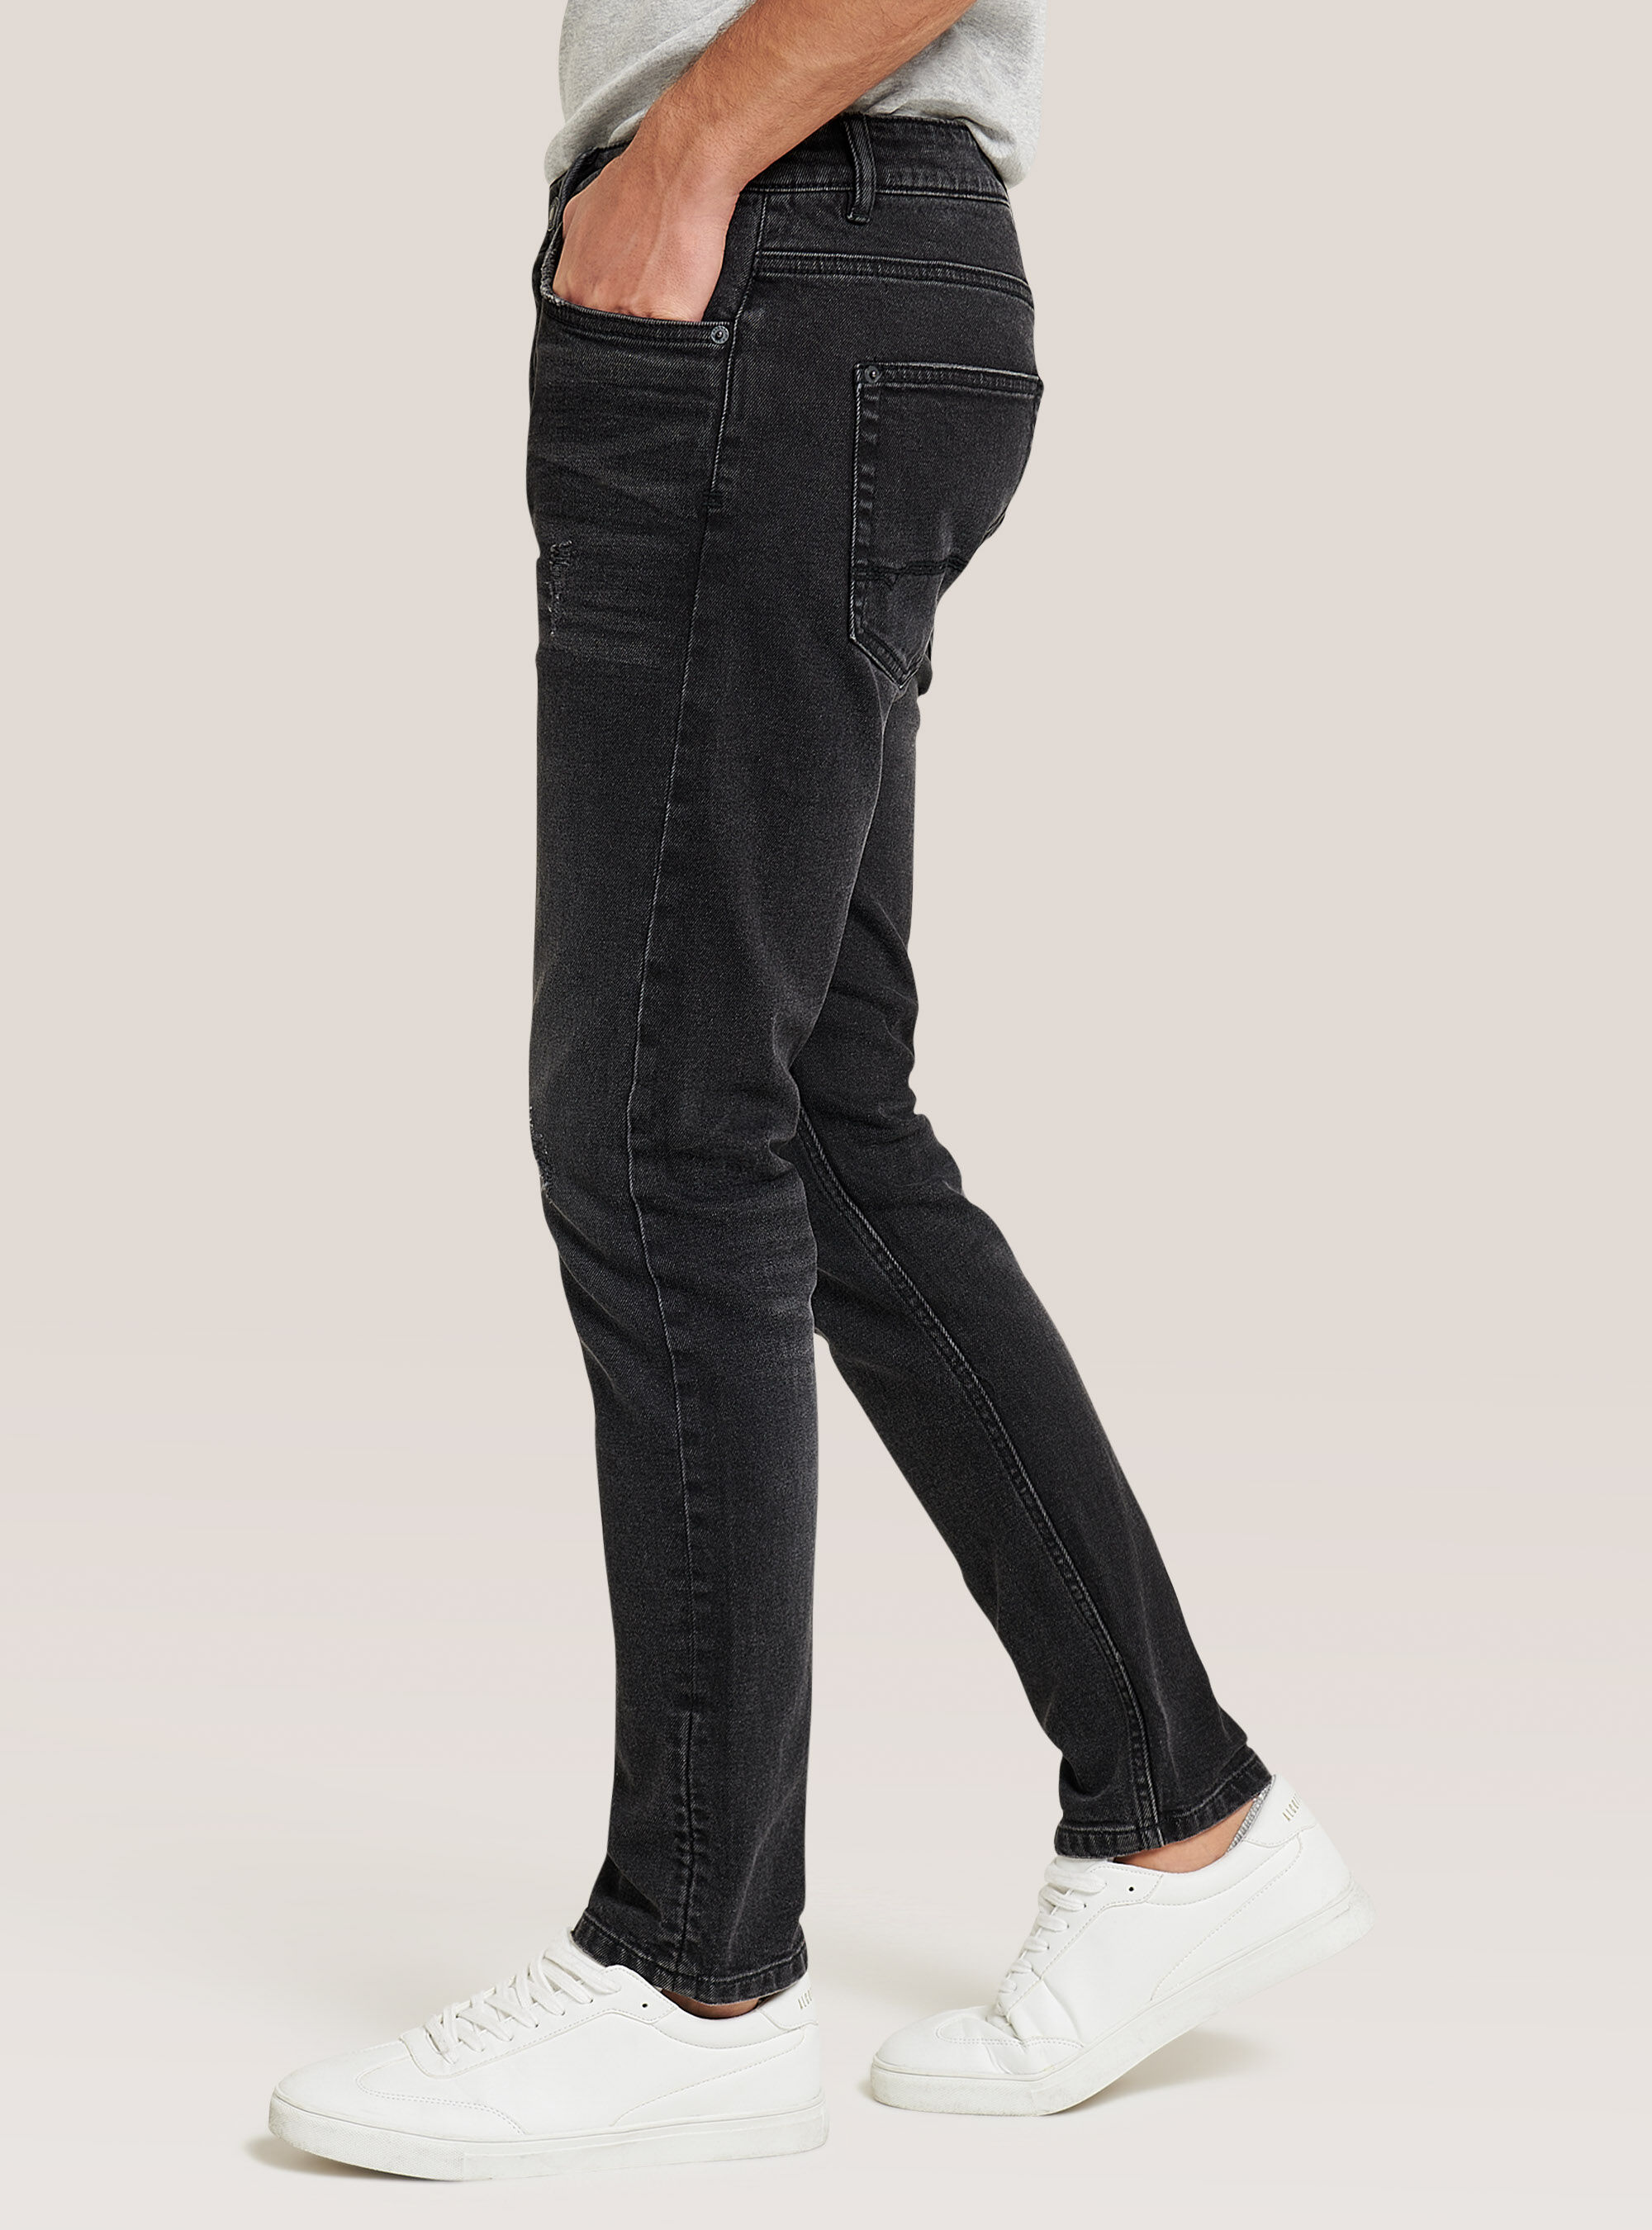 Vendesi nuovo per errato Uomo Vestiti Jeans Jeans slim fit Alcott Jeans slim fit Acquisto e mai sostituito jeans alcott ragazzo taglia 44 colore nero 